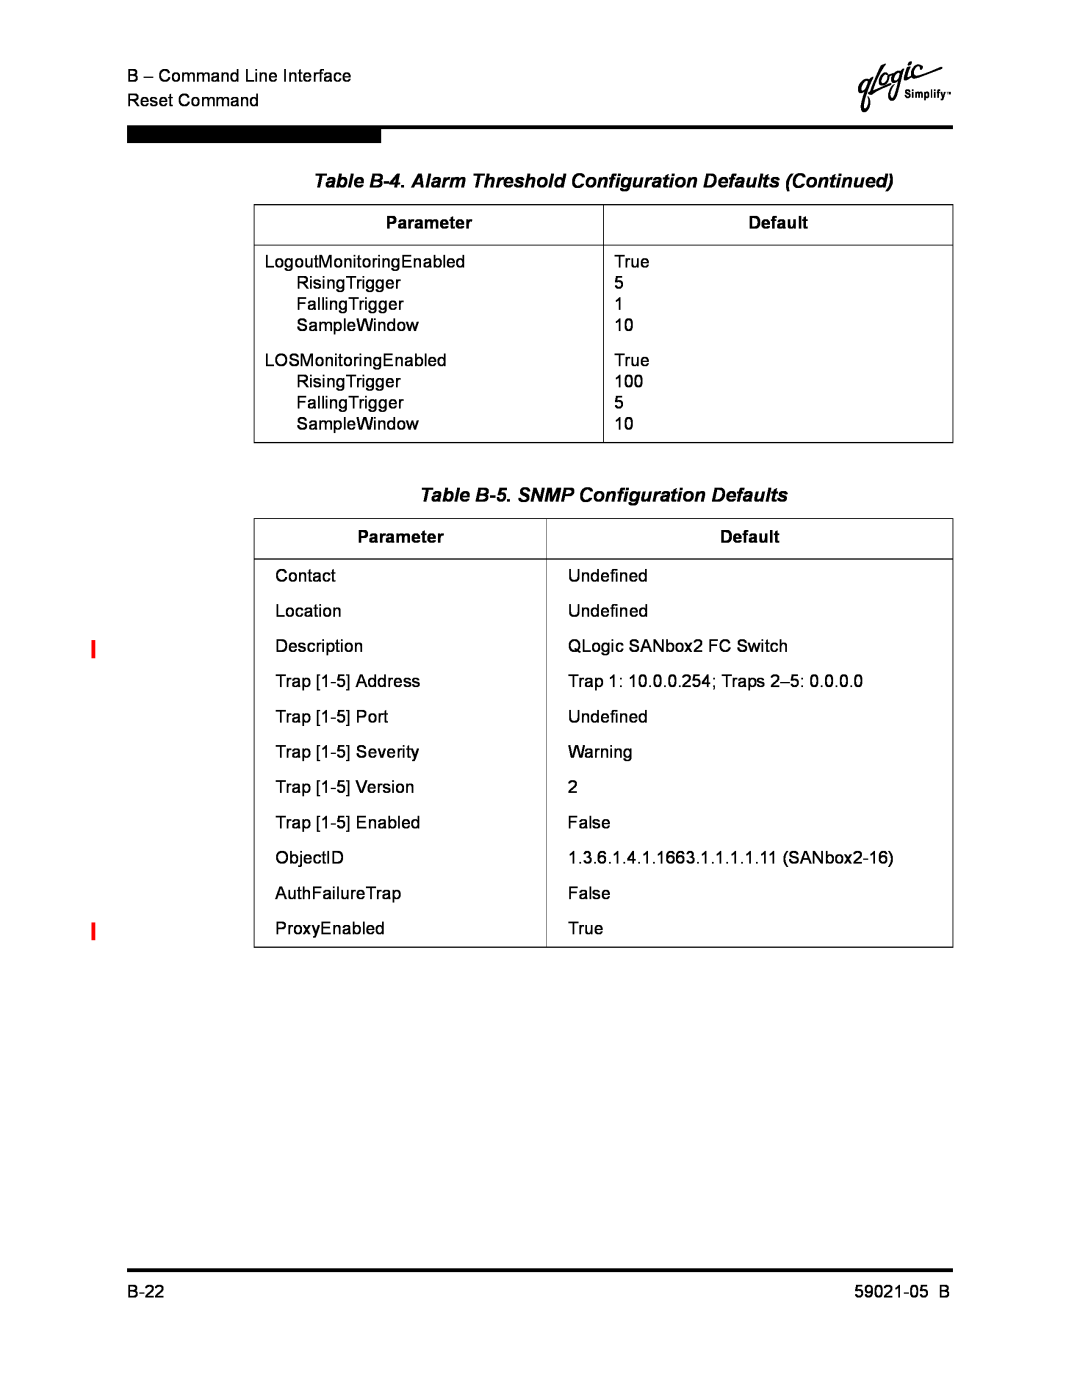 Q-Logic 59021-05 B Table B-4. Alarm Threshold Configuration Defaults Continued, Table B-5. SNMP Configuration Defaults 